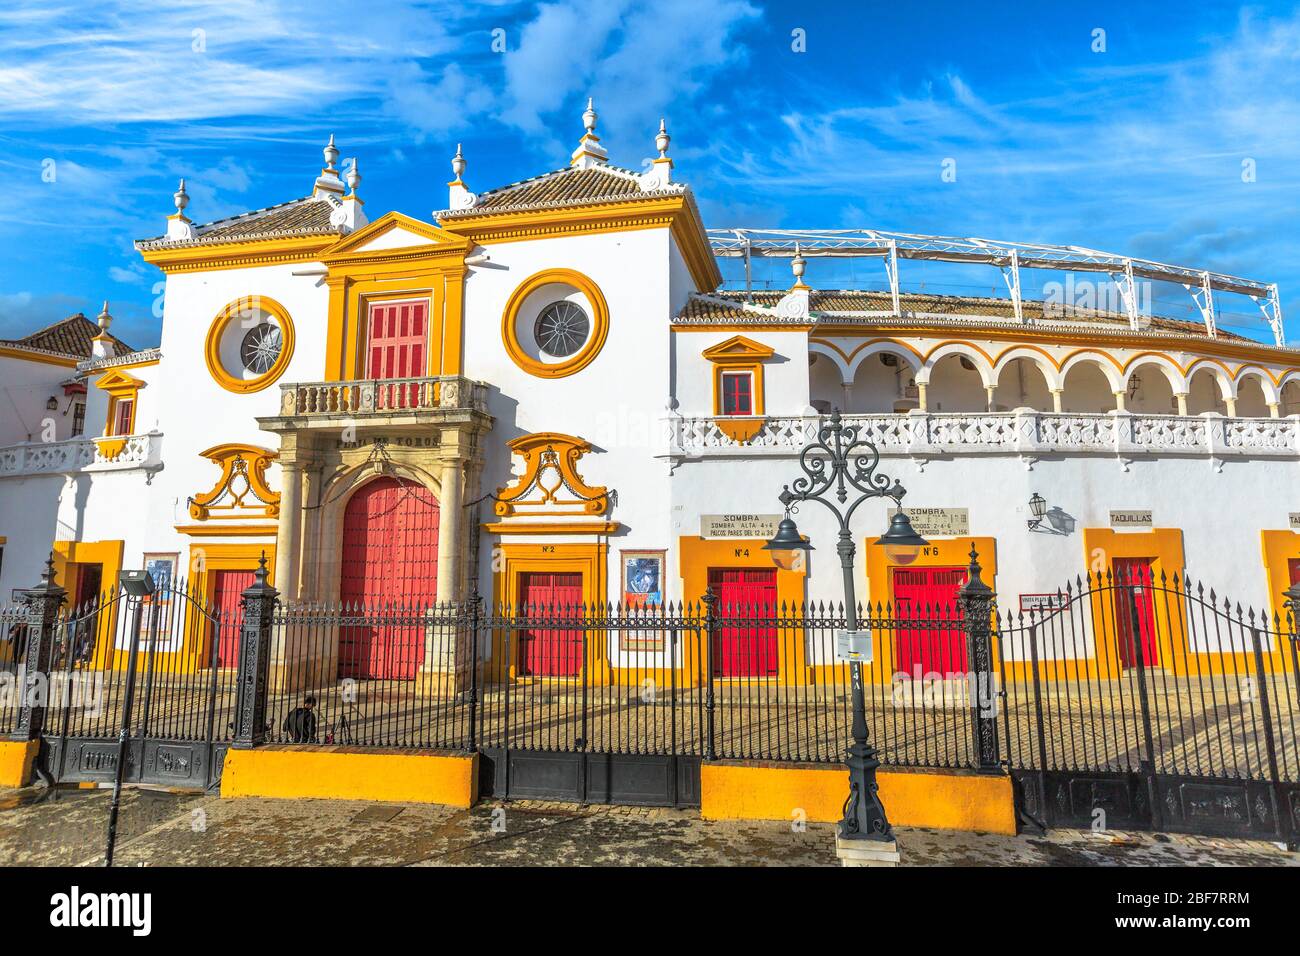 Siviglia, Andalusia, Spagna - 19 aprile 2016: Arena in Piazza dei tori della Maestranza reale di Cavalleria o Plaza de Toros de la Real Maestranza de Foto Stock